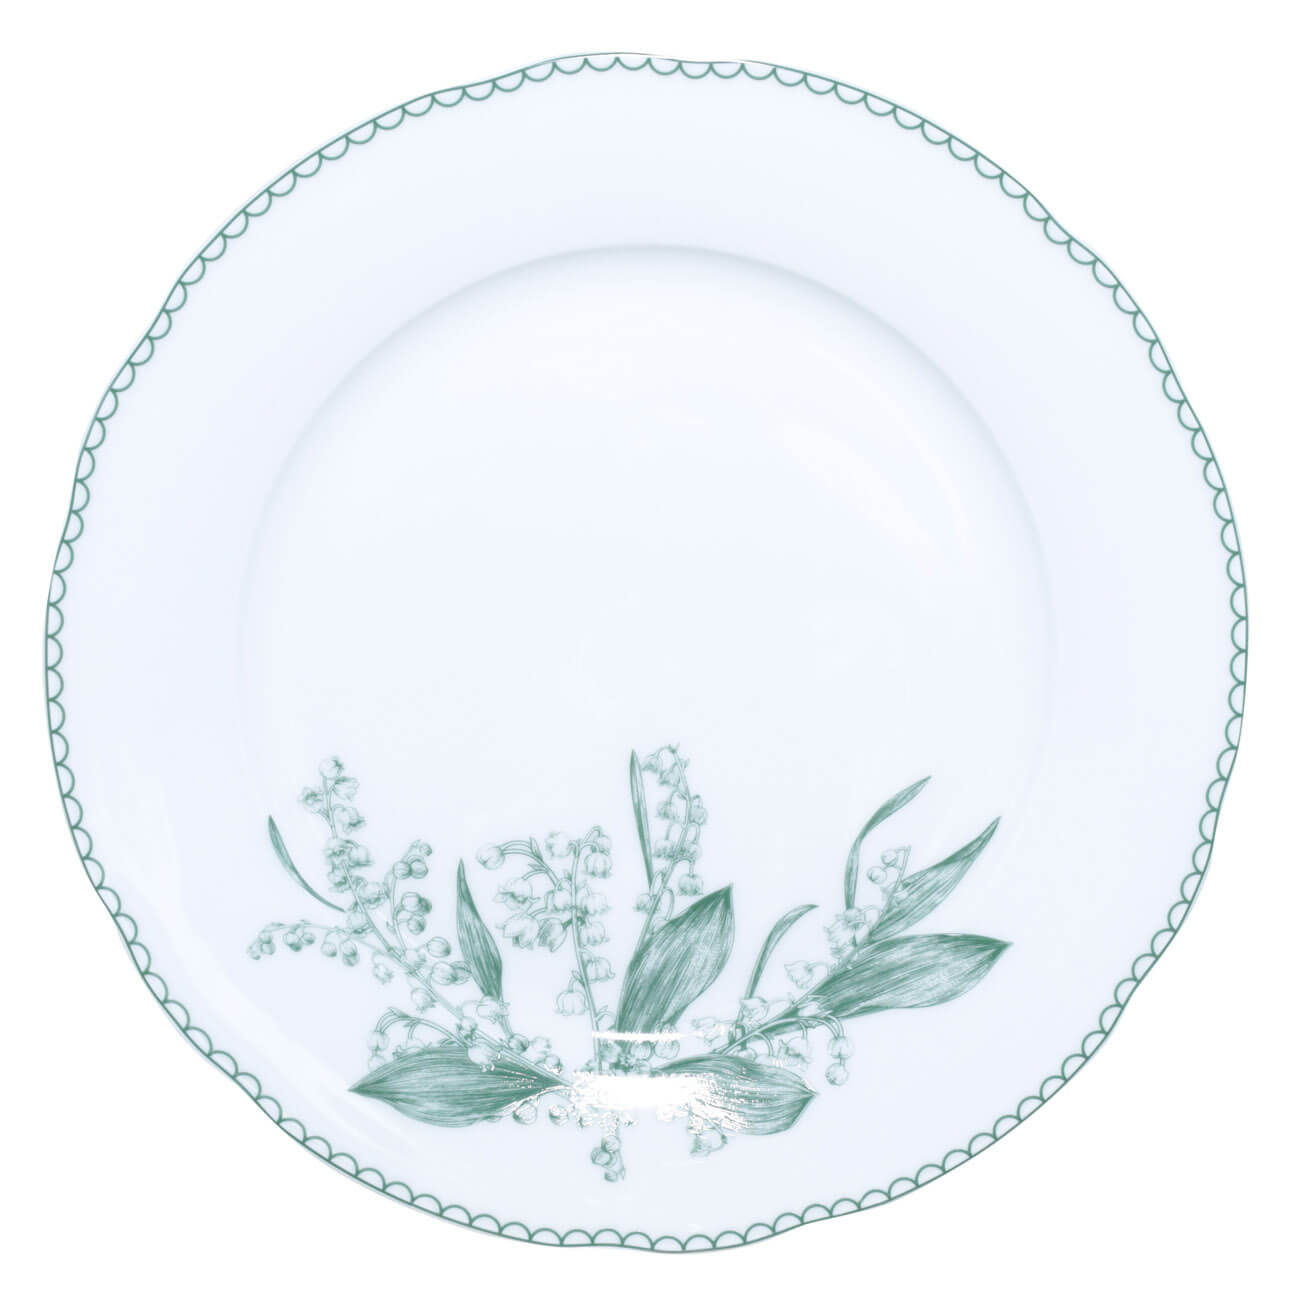 Тарелка обеденная, 27 см, фарфор F, белая, Весенние ландыши, May-lily ландыши для малышки